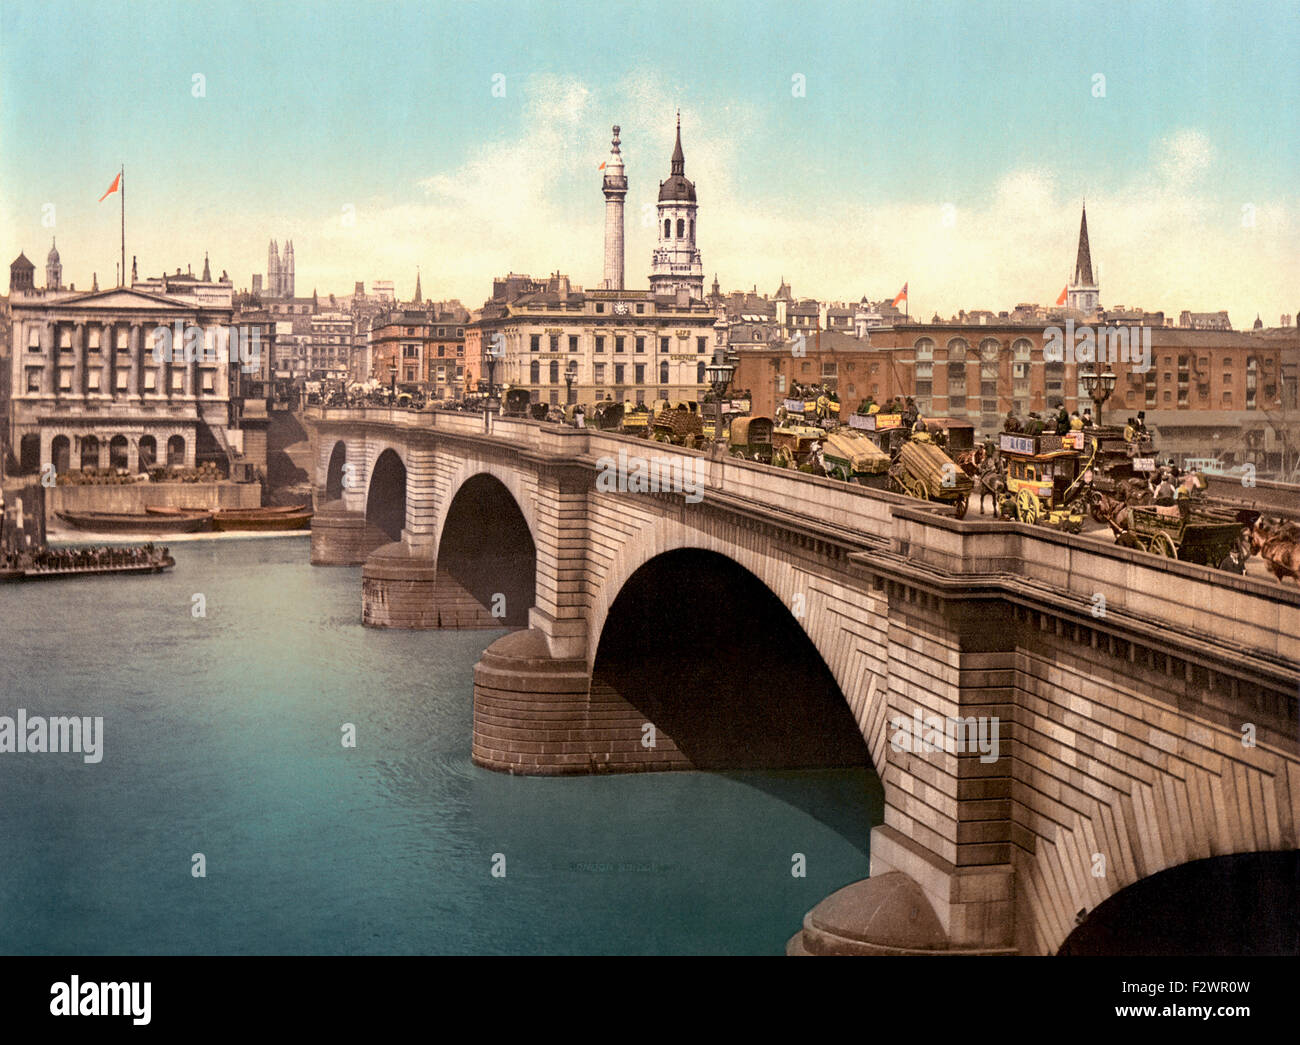 Londres, Inglaterra. Puente de Londres el río Támesis. Esta fotografía de finales del siglo XIX muestra el arco de piedra victoriana versión del puente que existió desde 1832 hasta 1968. Foto de stock